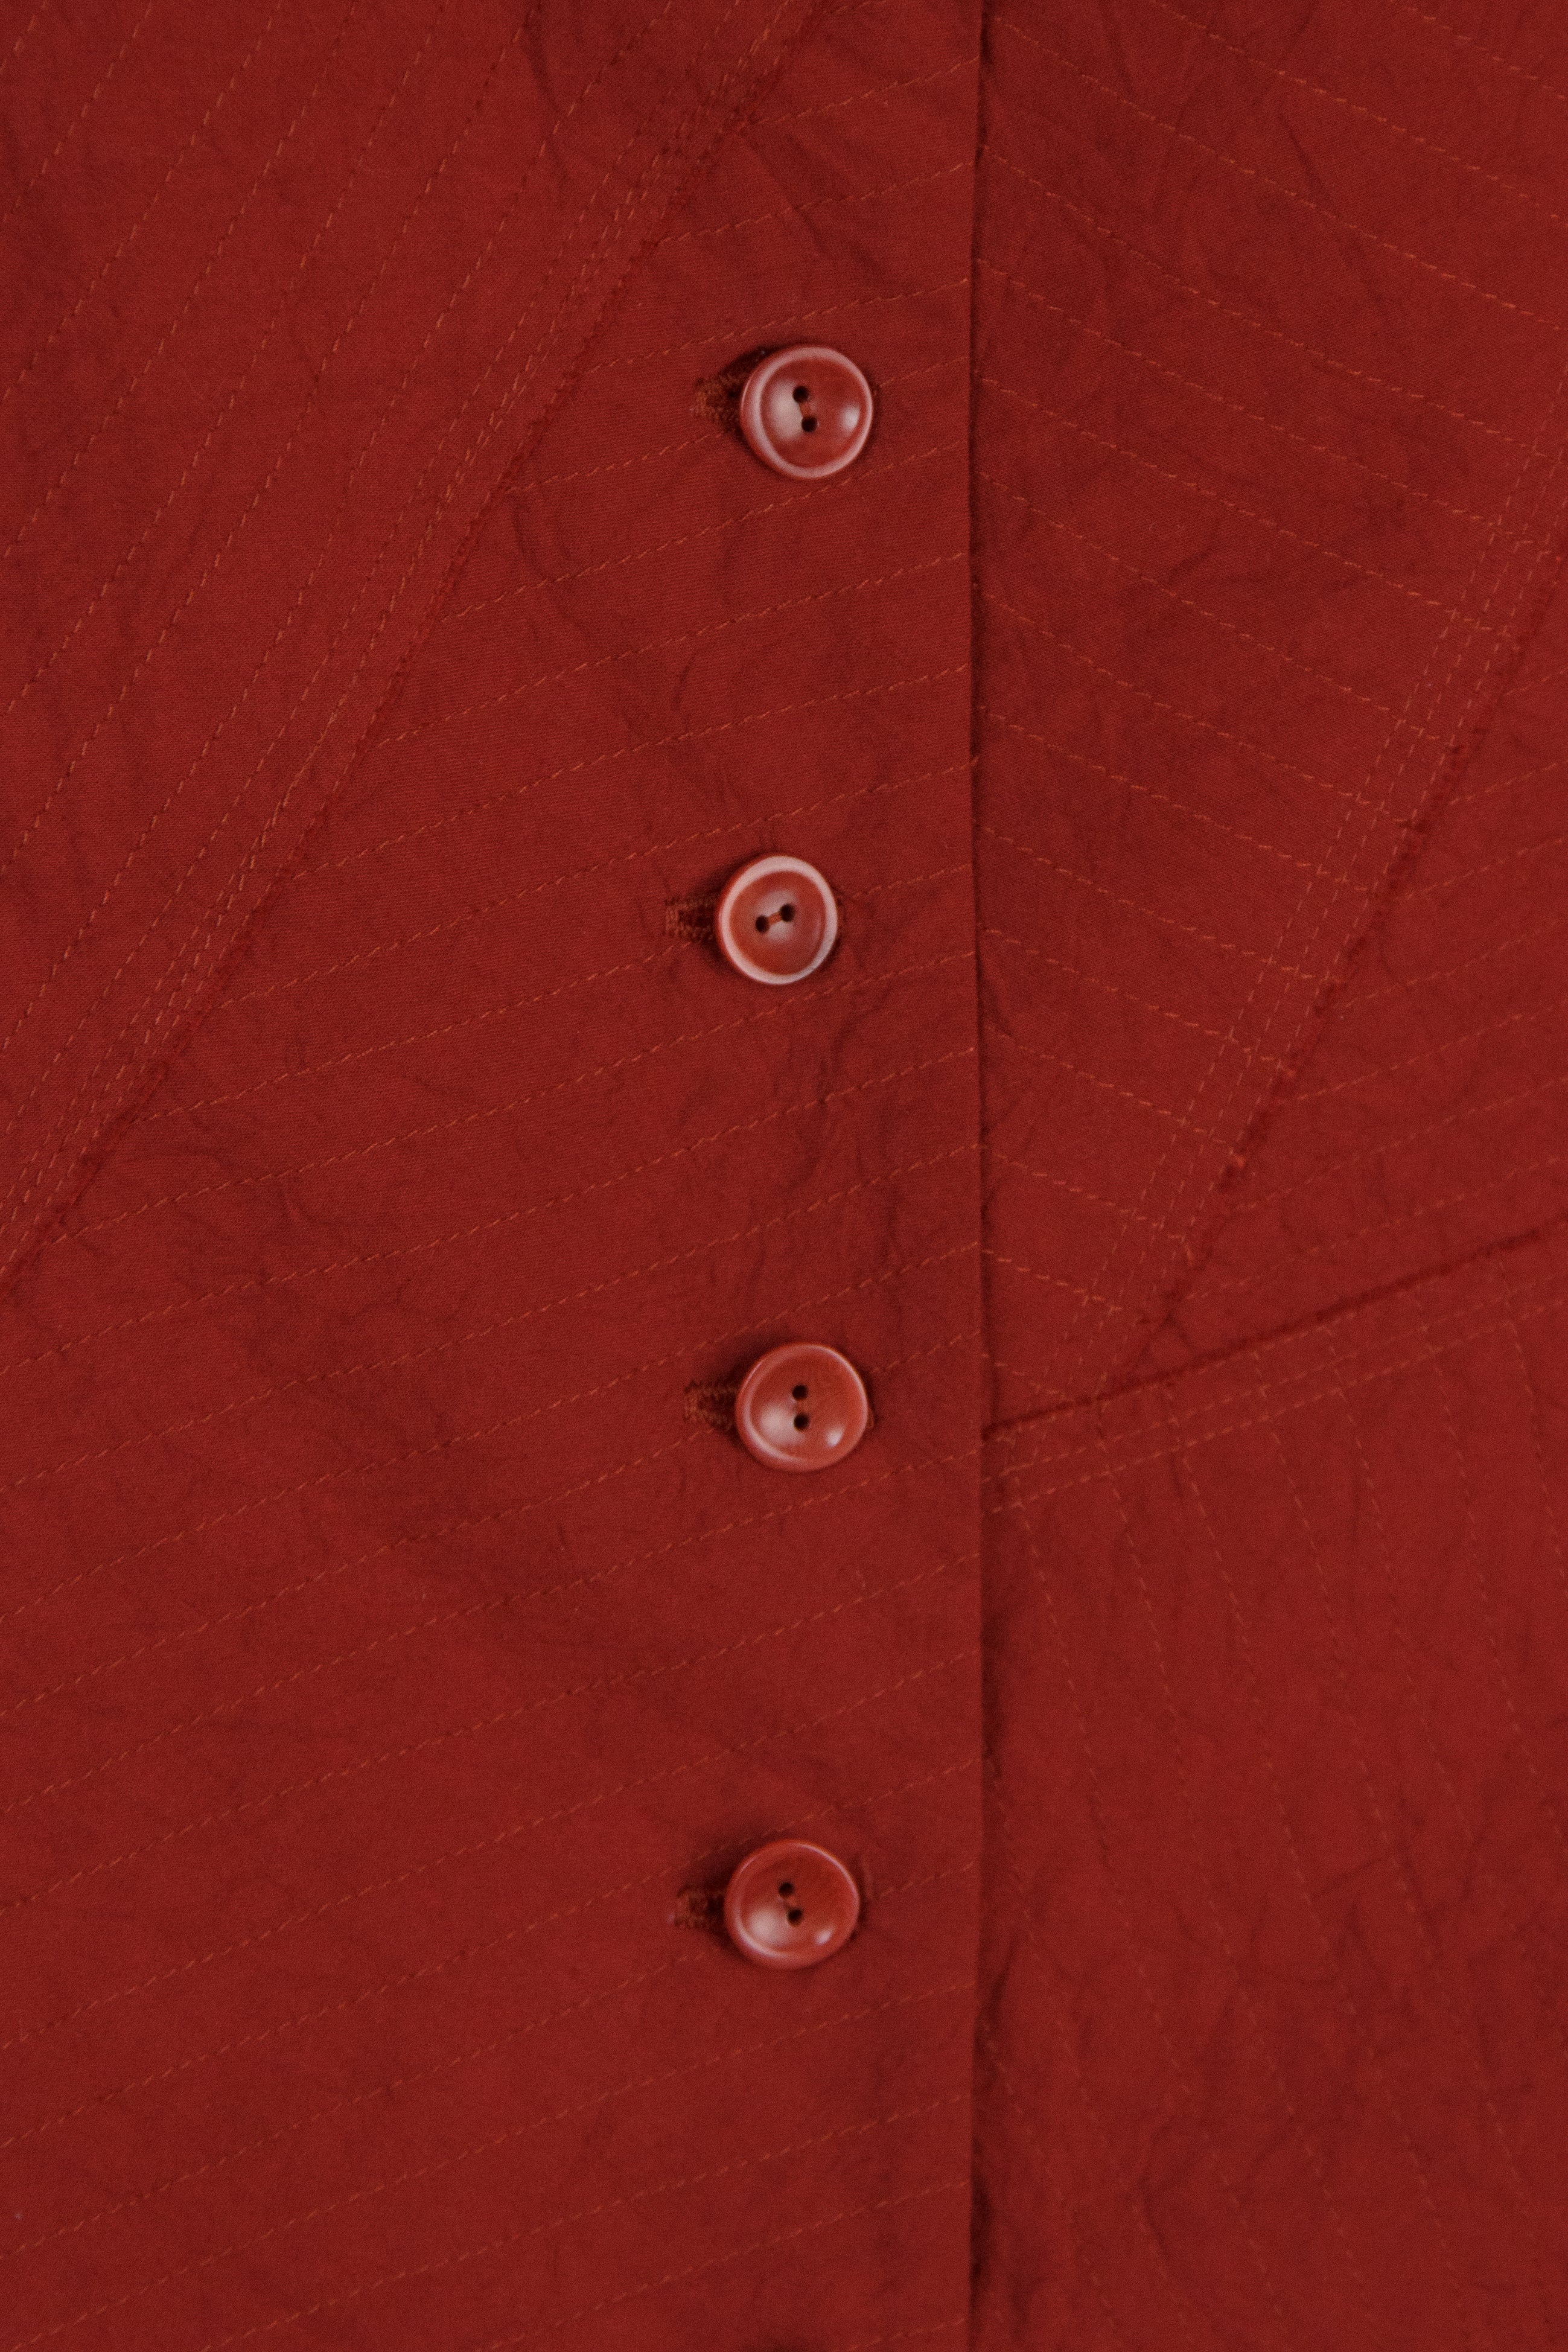 Mandarin Vest in Red Raw-Pieced Cotton